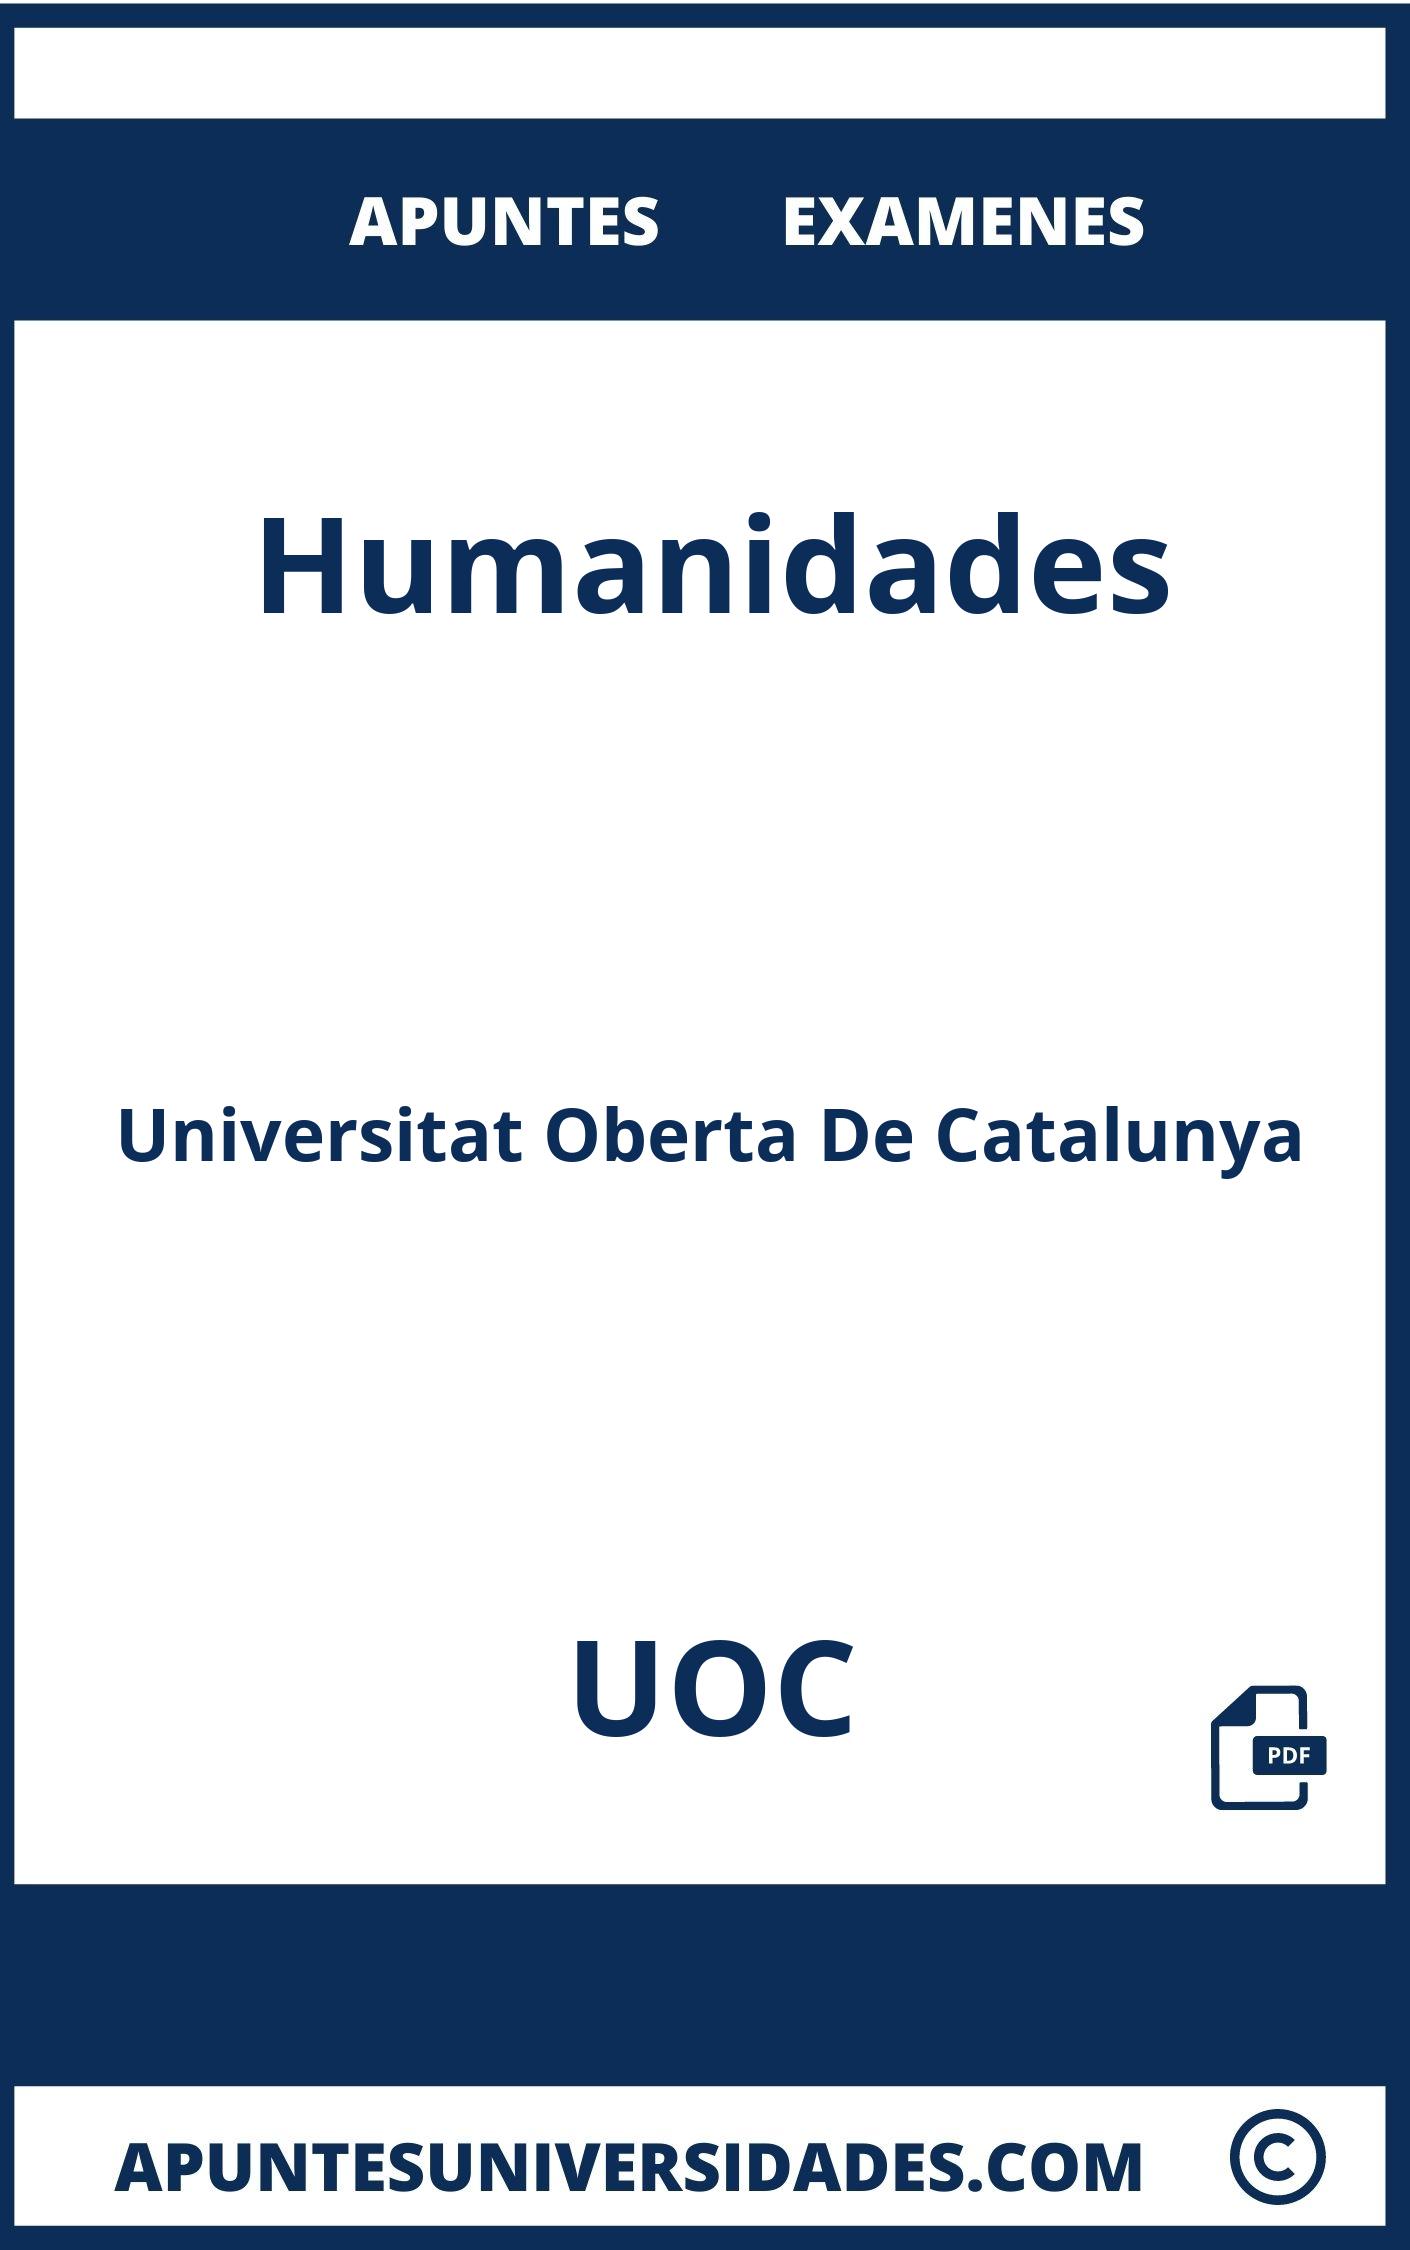 Apuntes y Examenes de Humanidades UOC